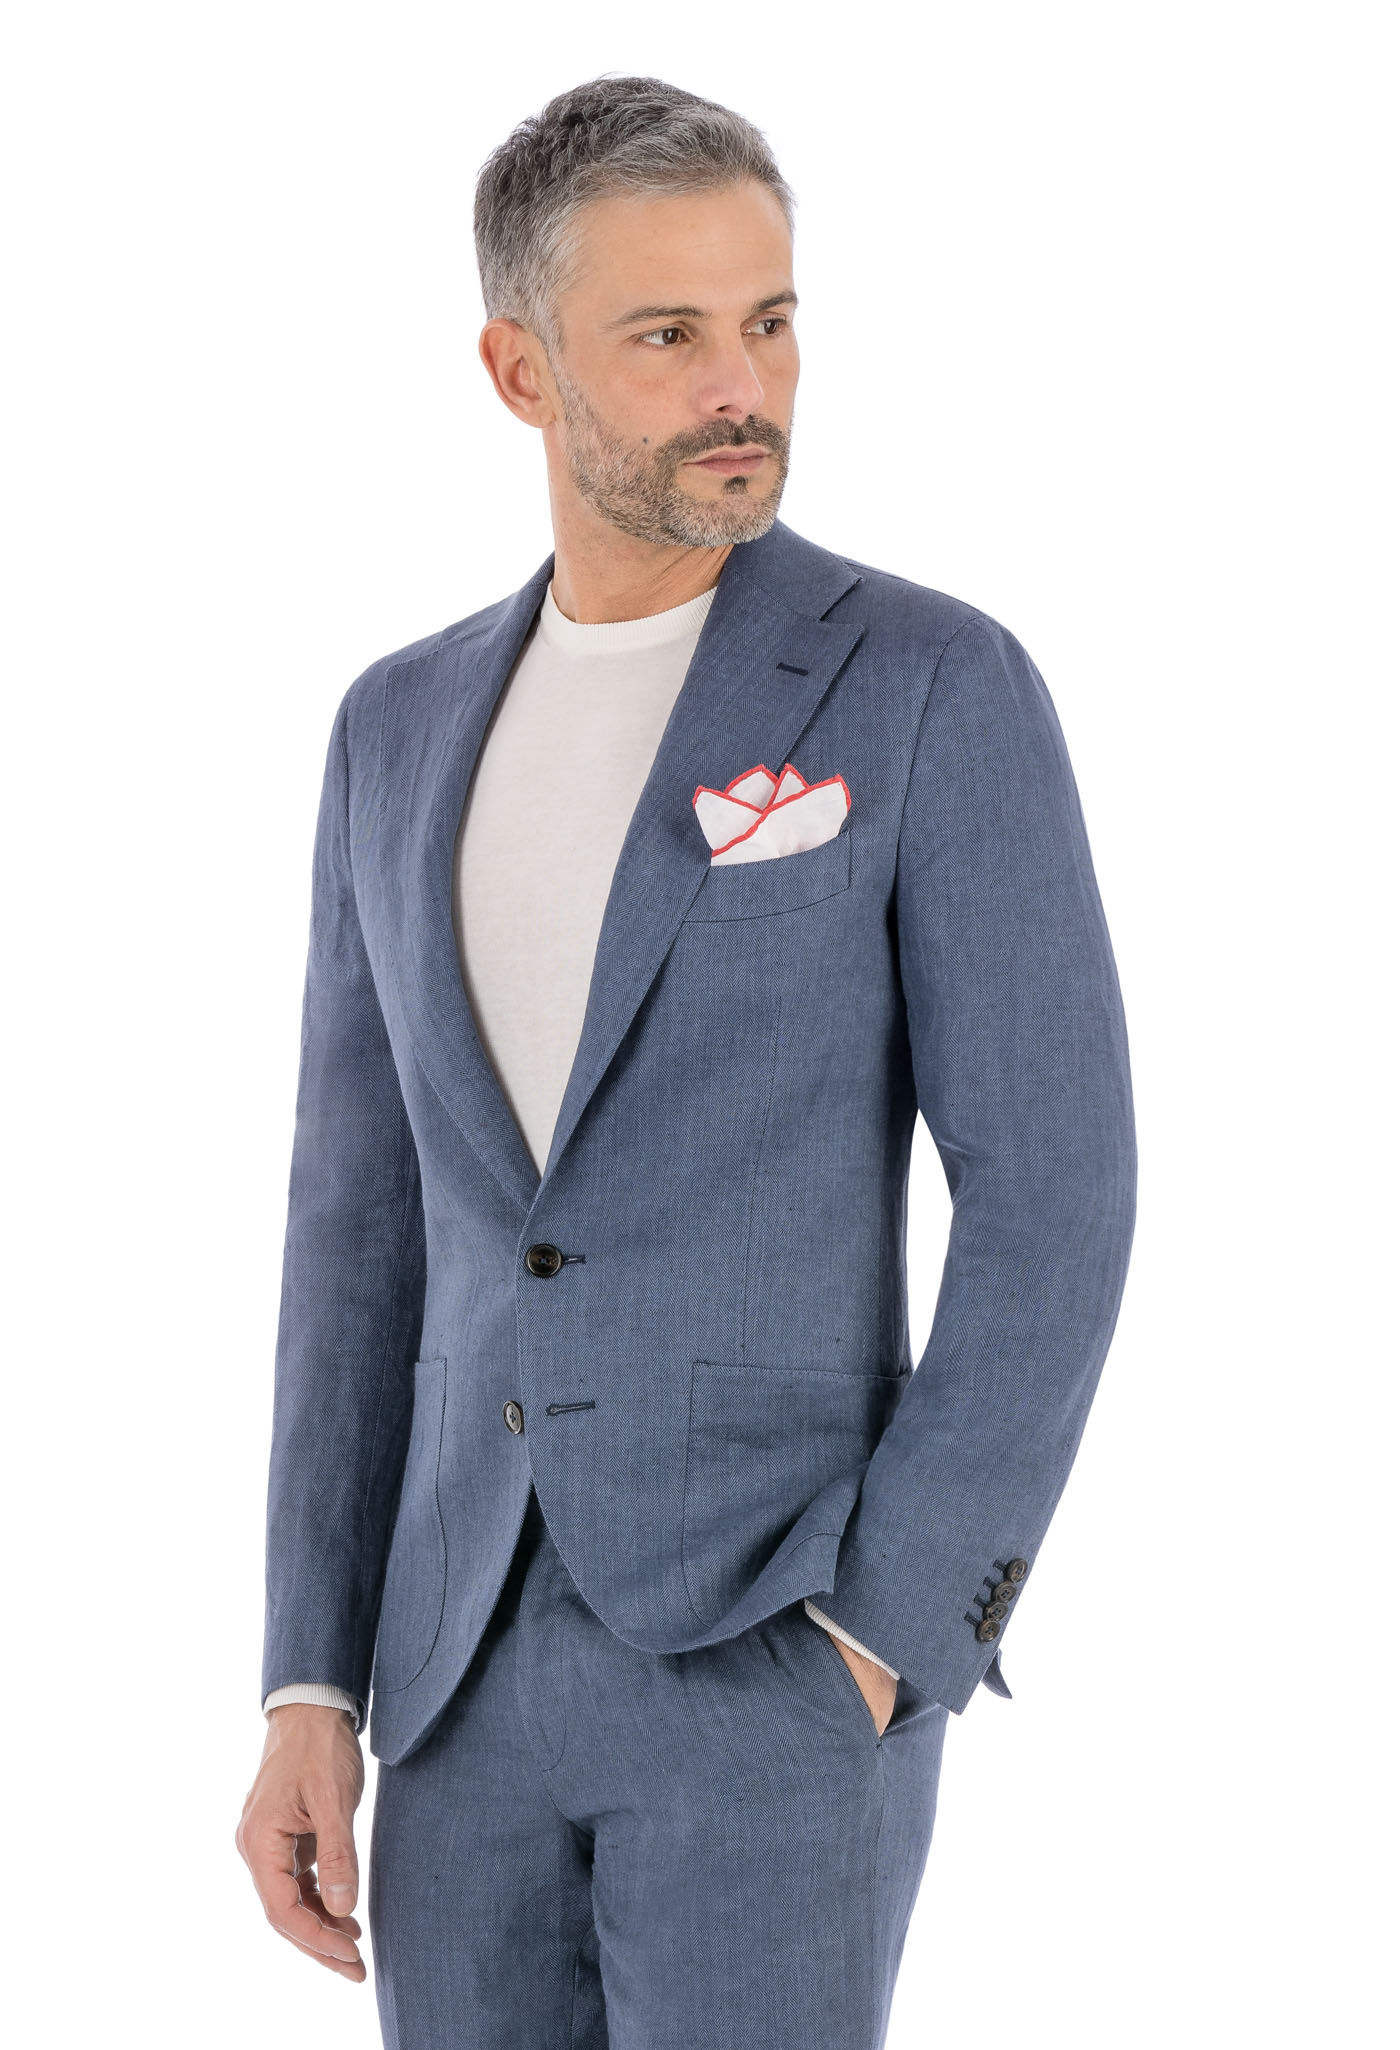 Porto Ercole Blu Suit